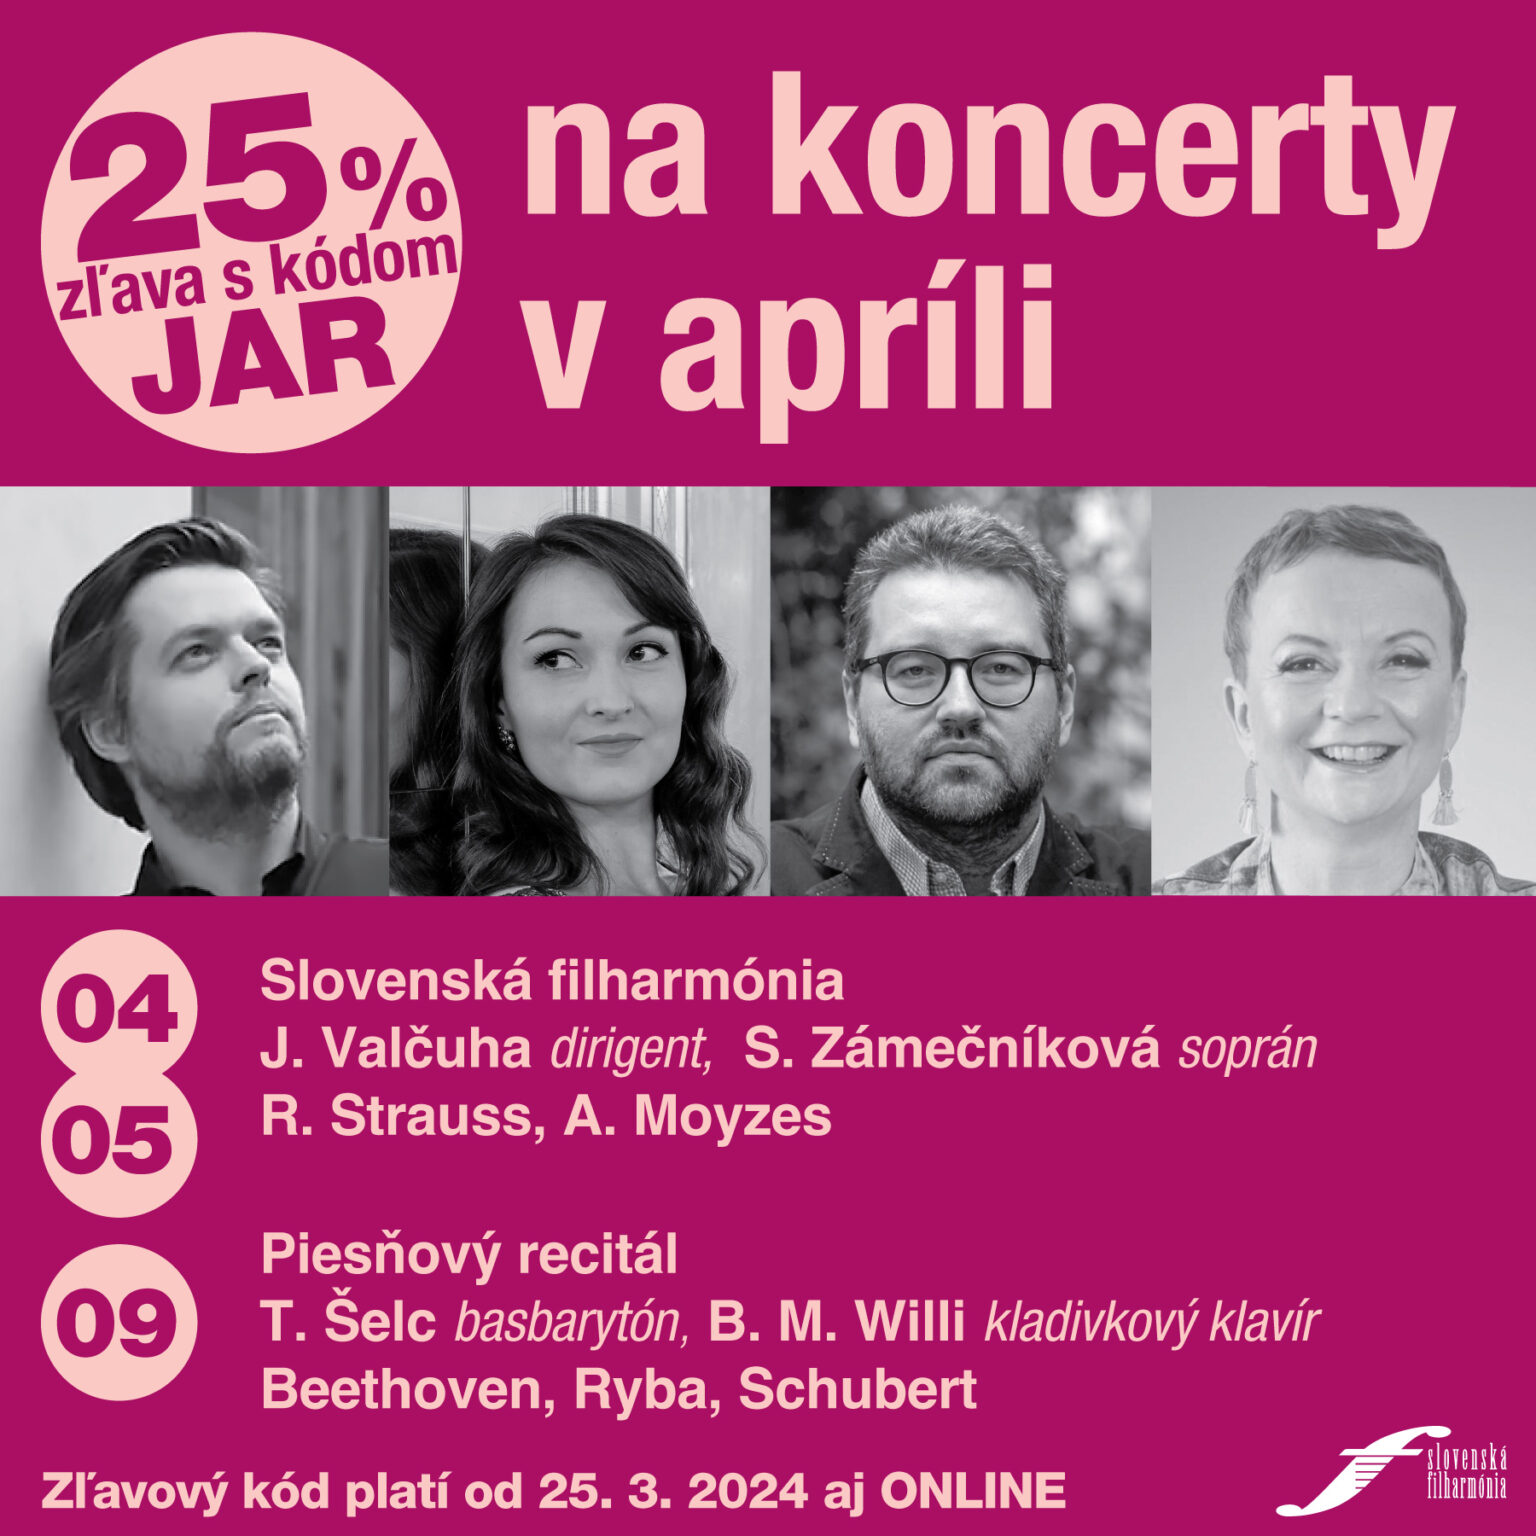 Slovenská filharmónia - zľava s kódom JAR